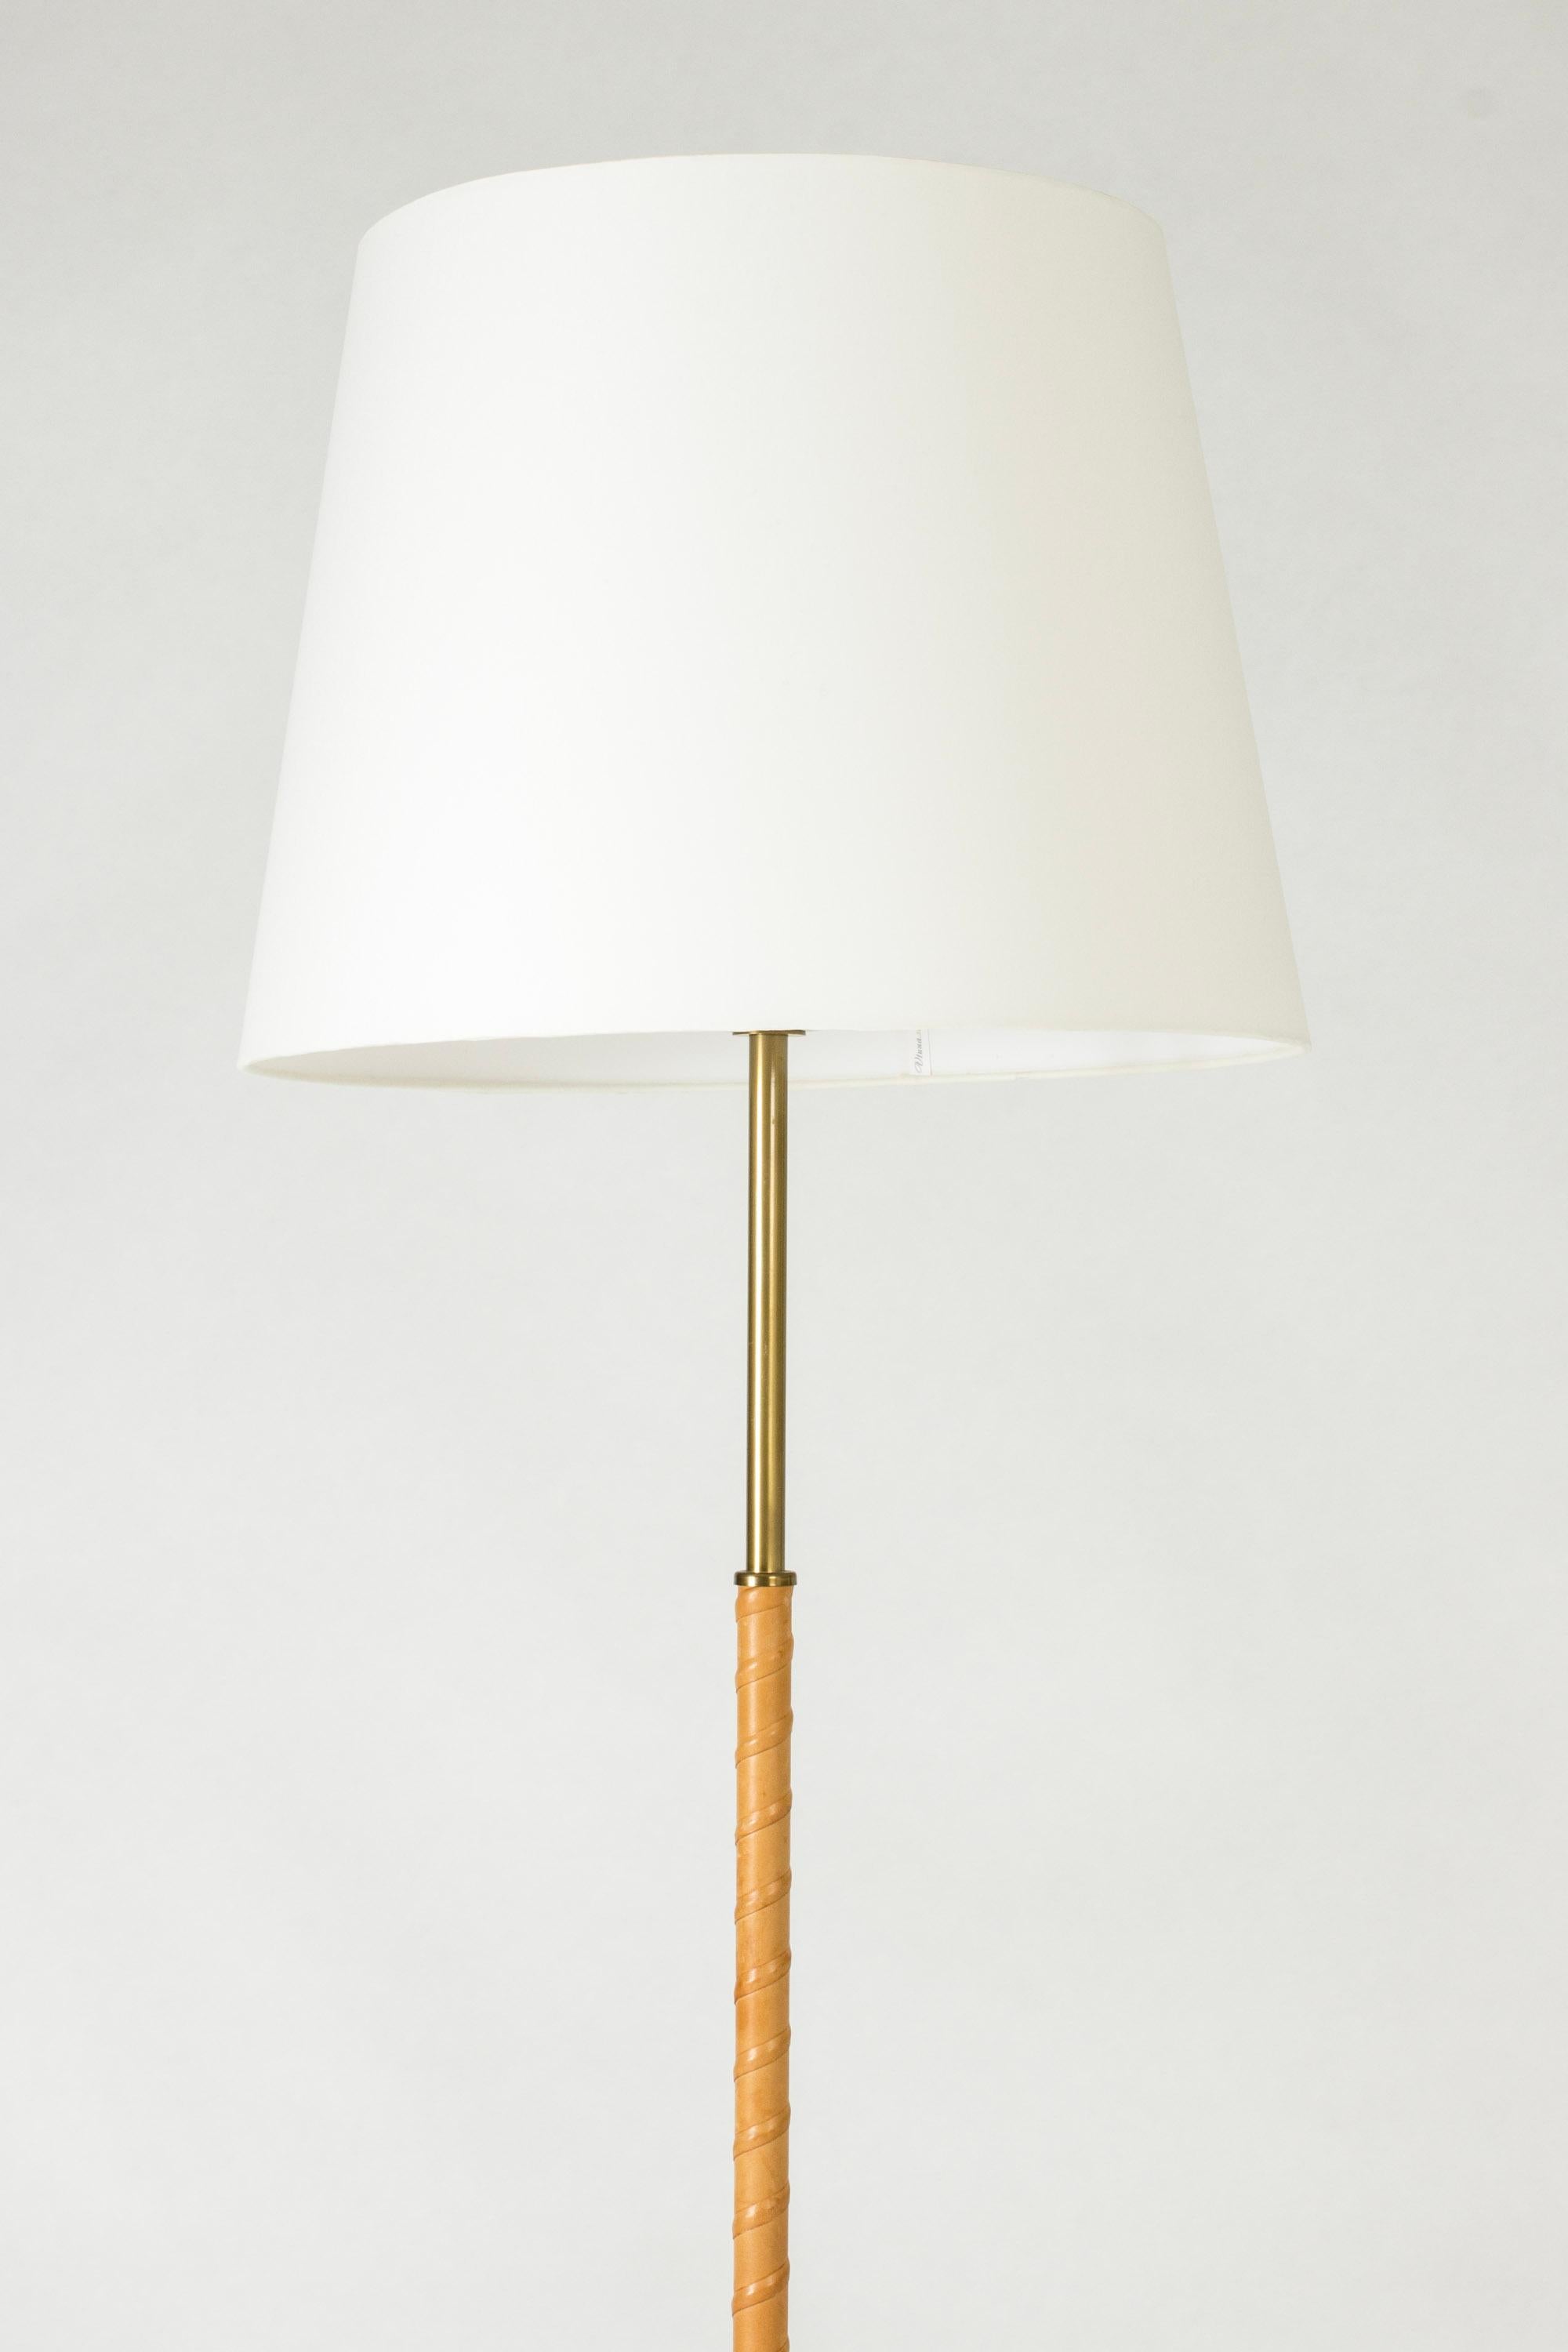 Lampadaire de Böhlmarks, en laiton avec une tige enroulée de cuir. Une pièce élégante et intemporelle.